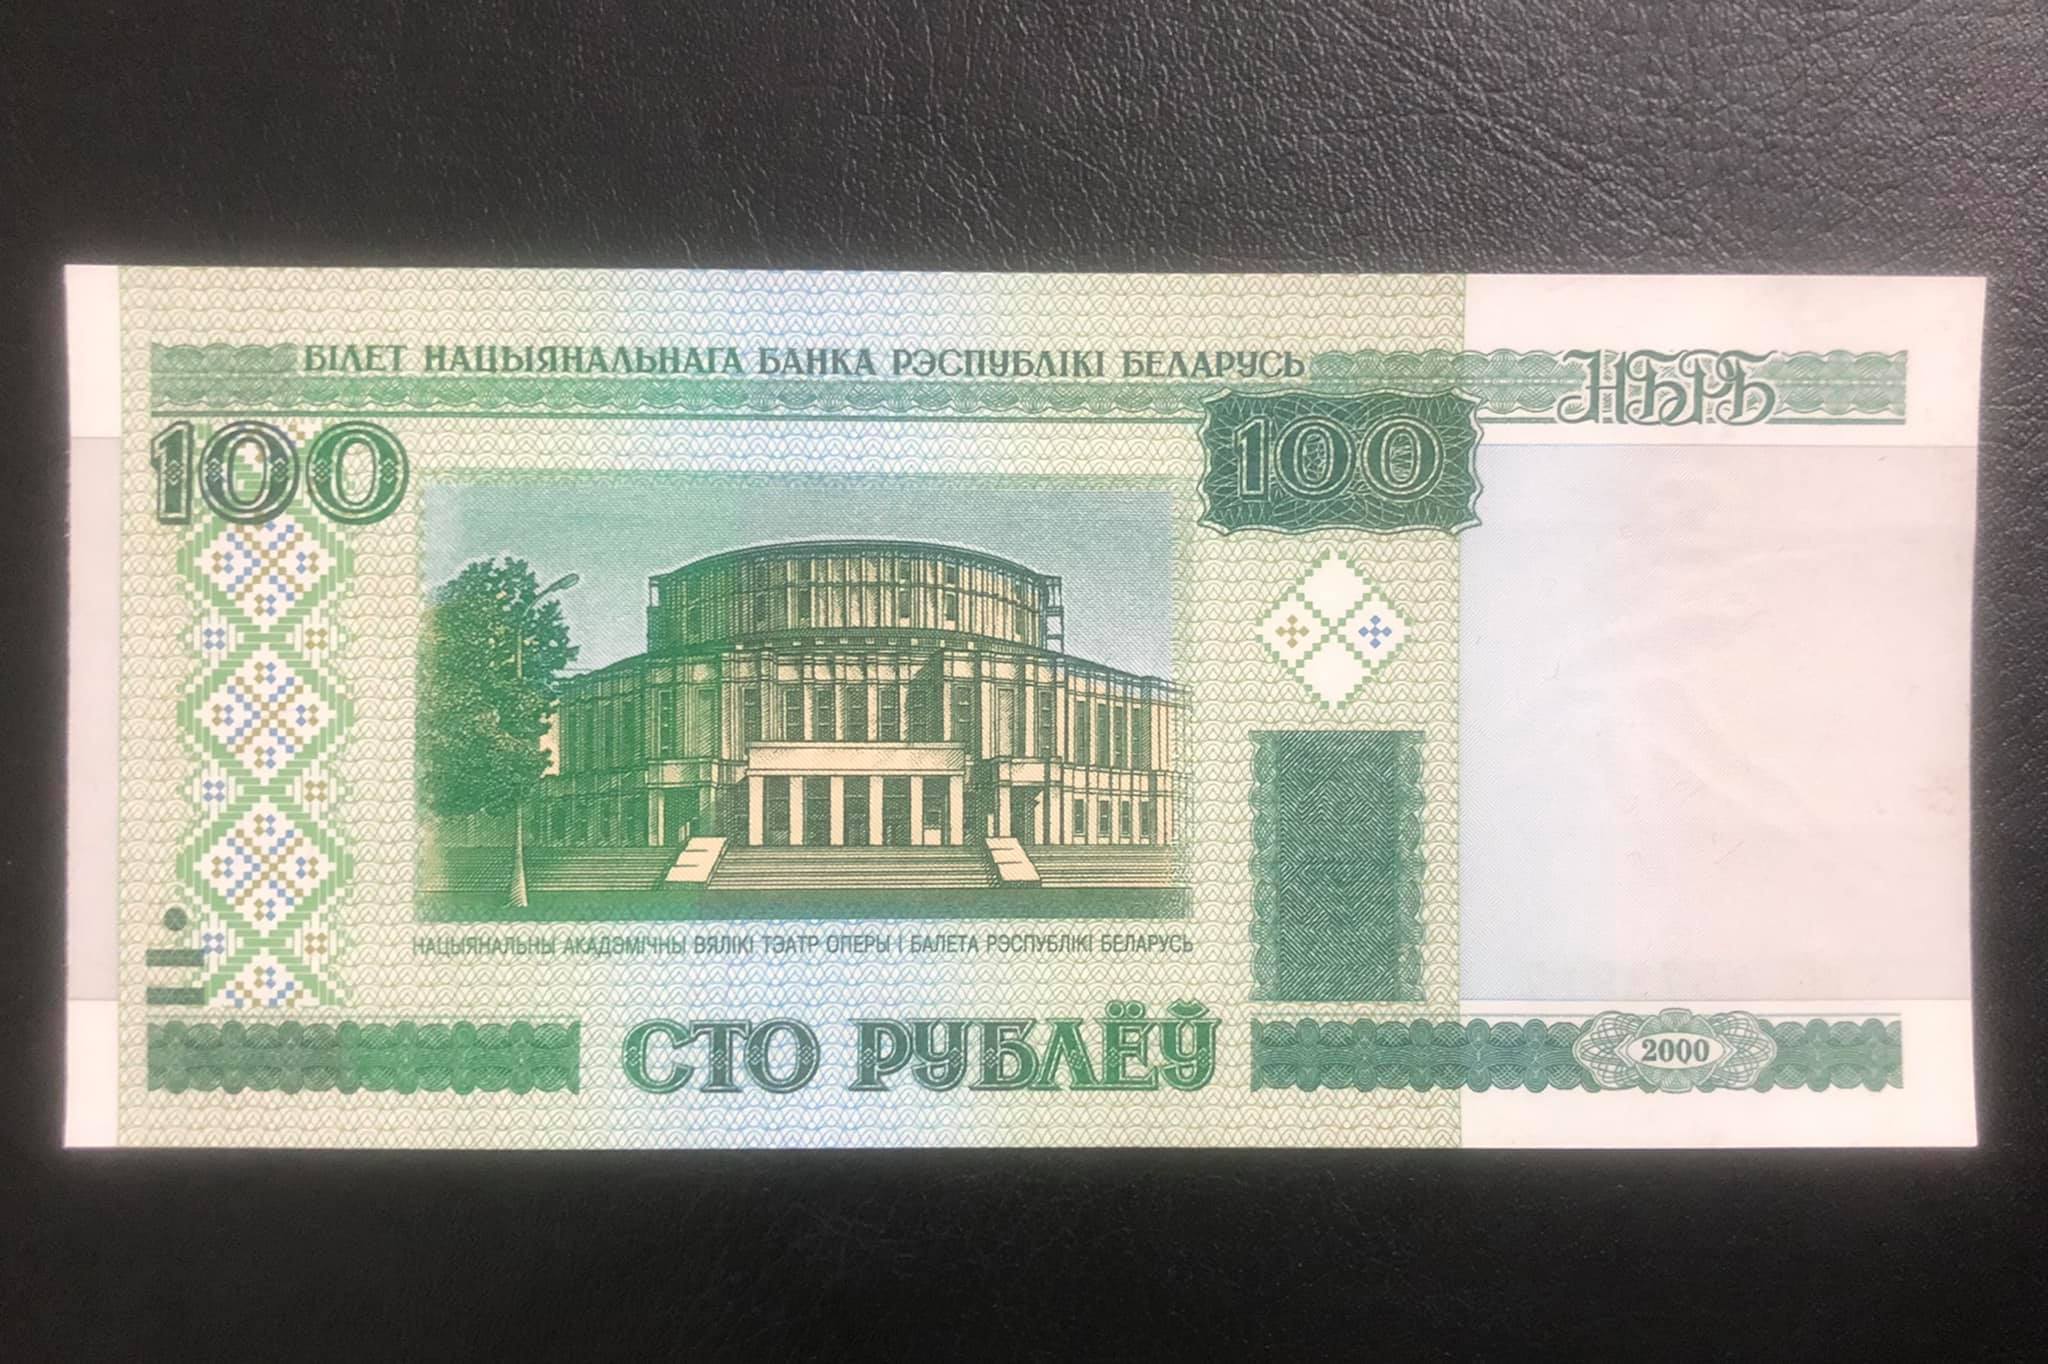 Tờ 100 rublei của Cộng hòa belarus, tiền thế giới sưu tầm